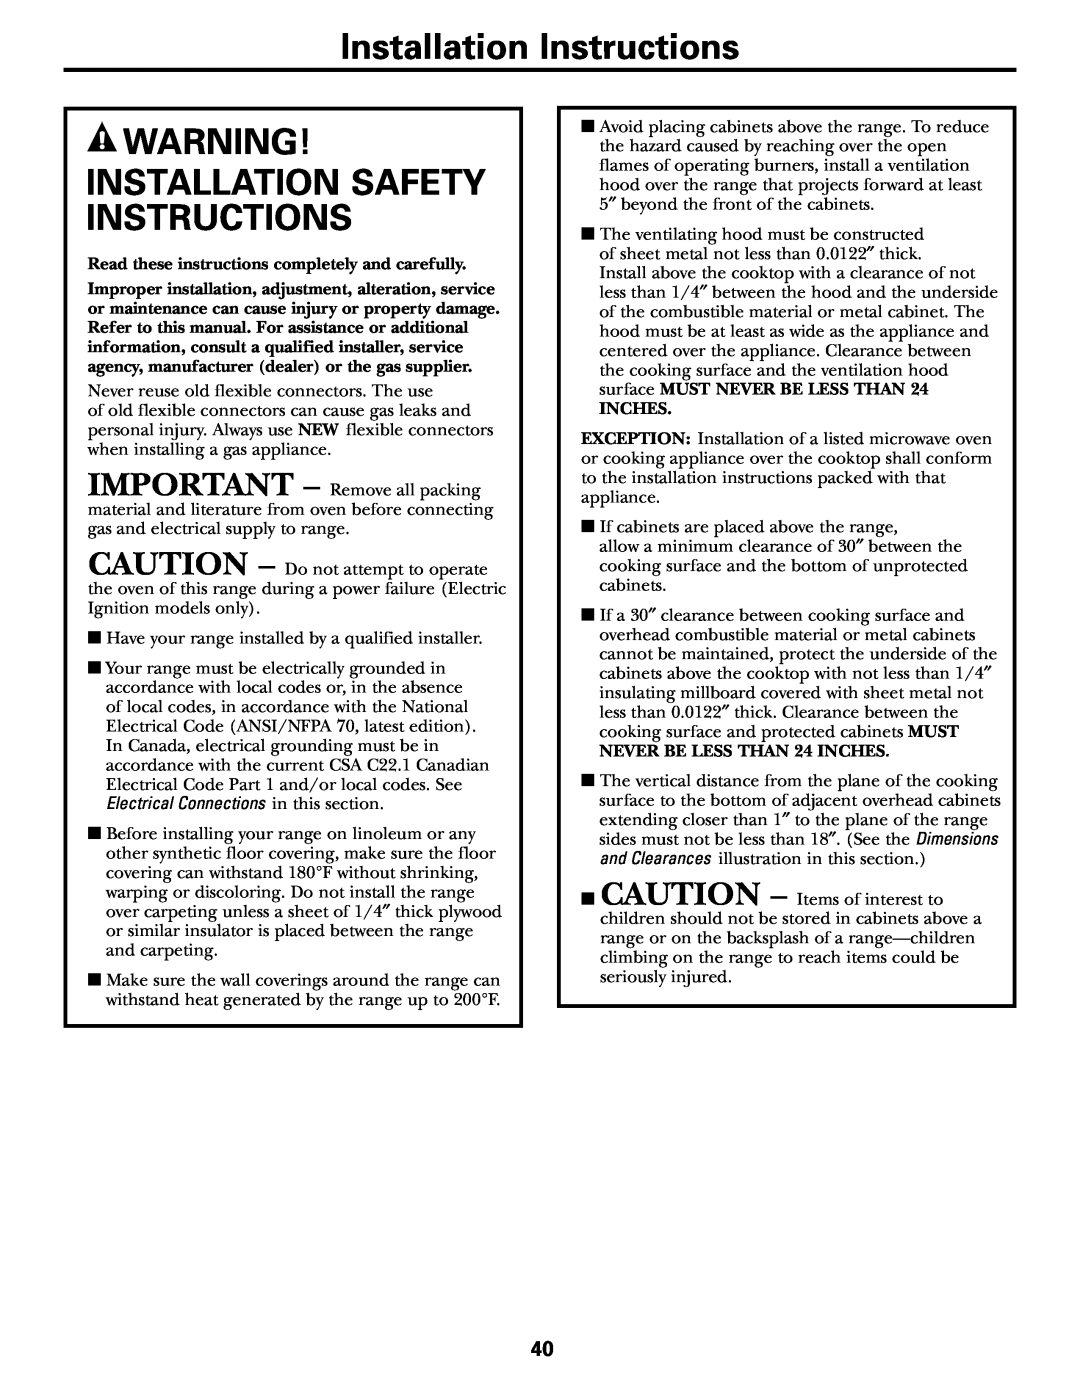 GE JGB905, JGB915 installation instructions Installation Instructions, Installation Safety Instructions 